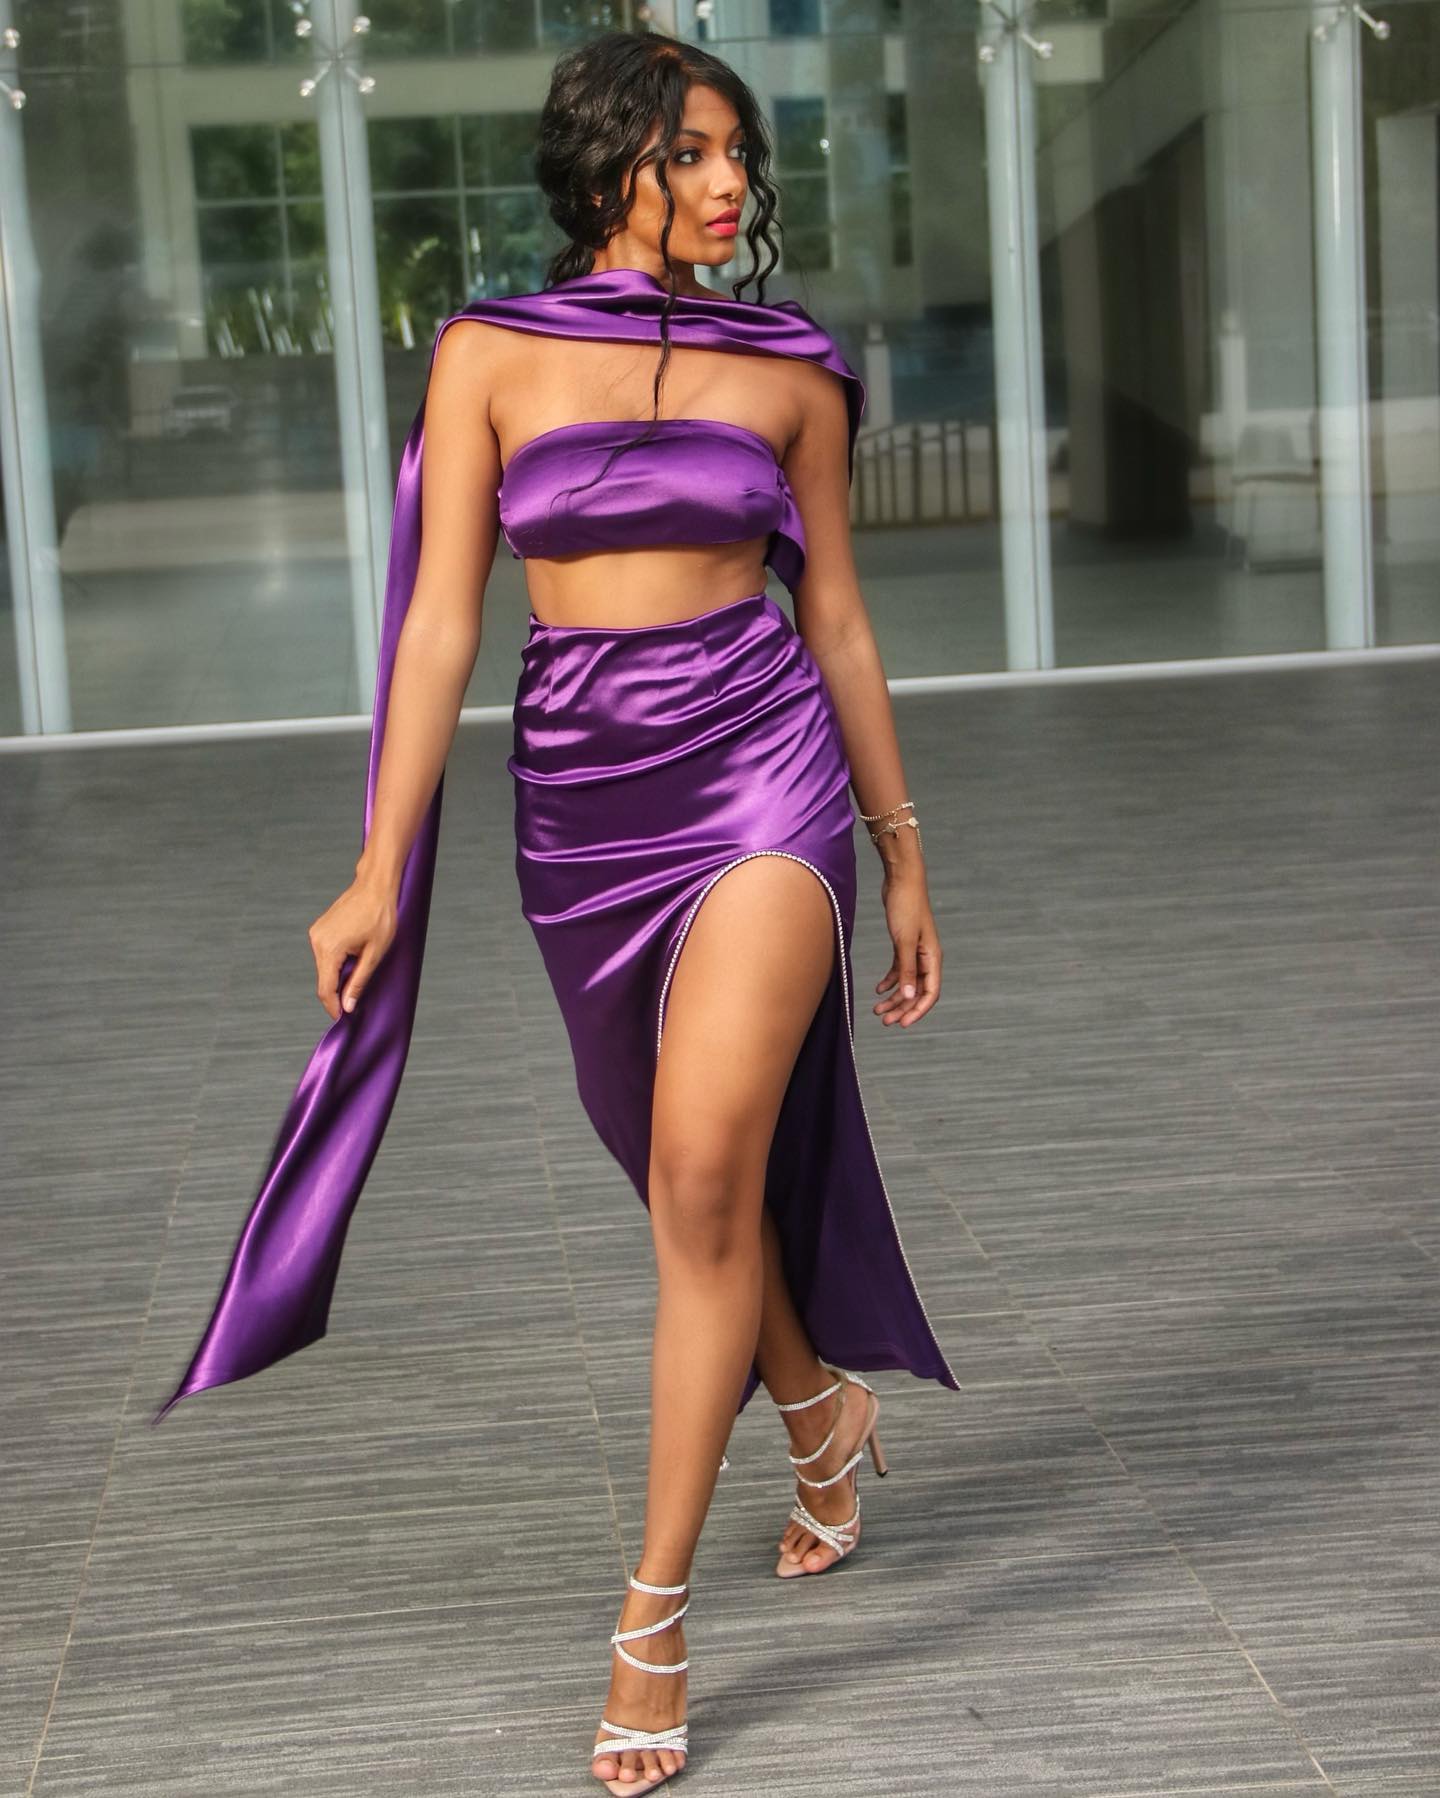 Purple Satin Strapless Sash Gown